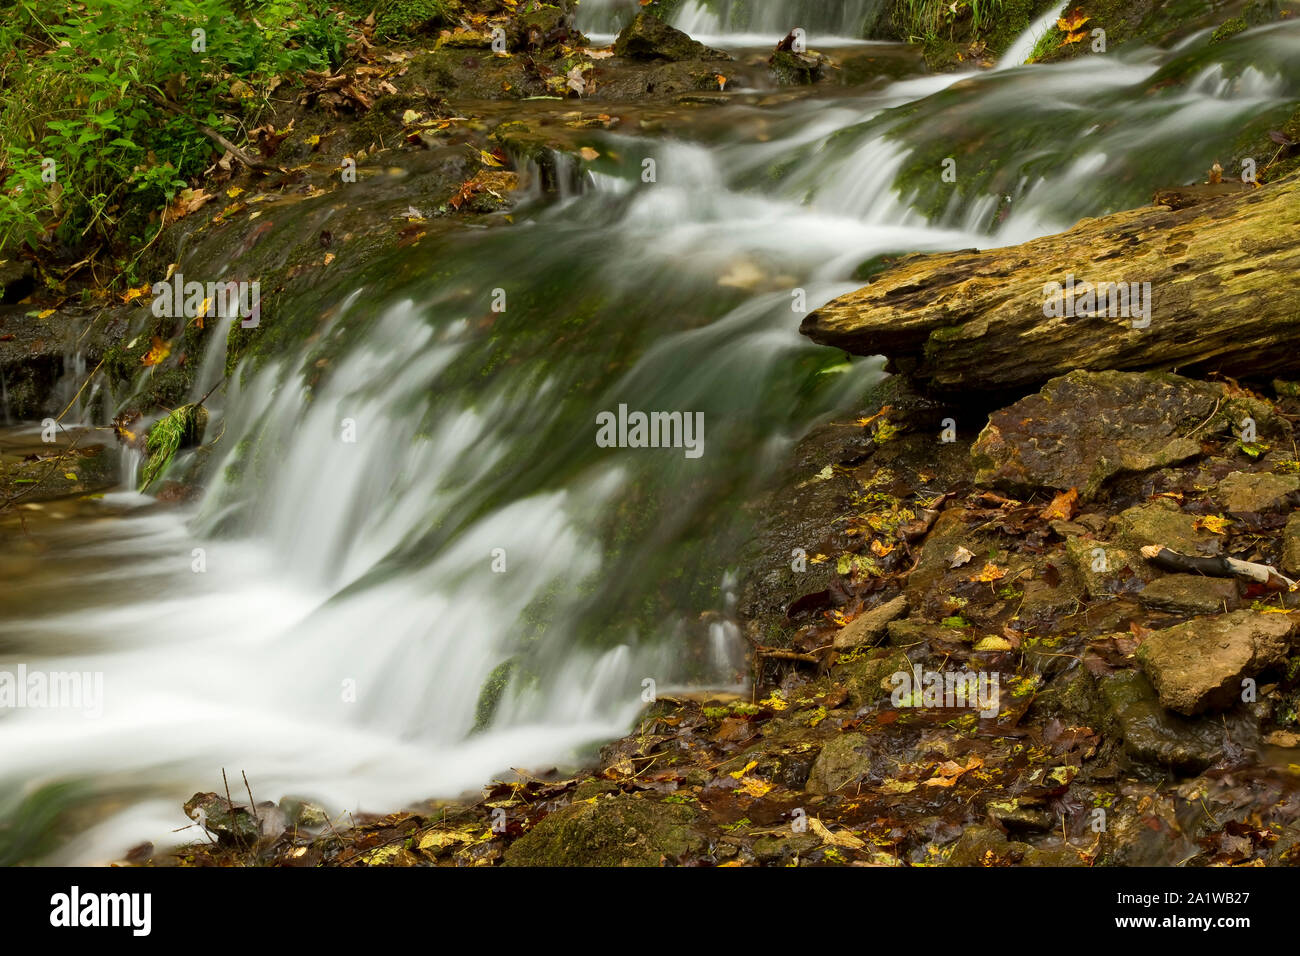 Un manantial alimenta una cascada en el bosque. Foto de stock